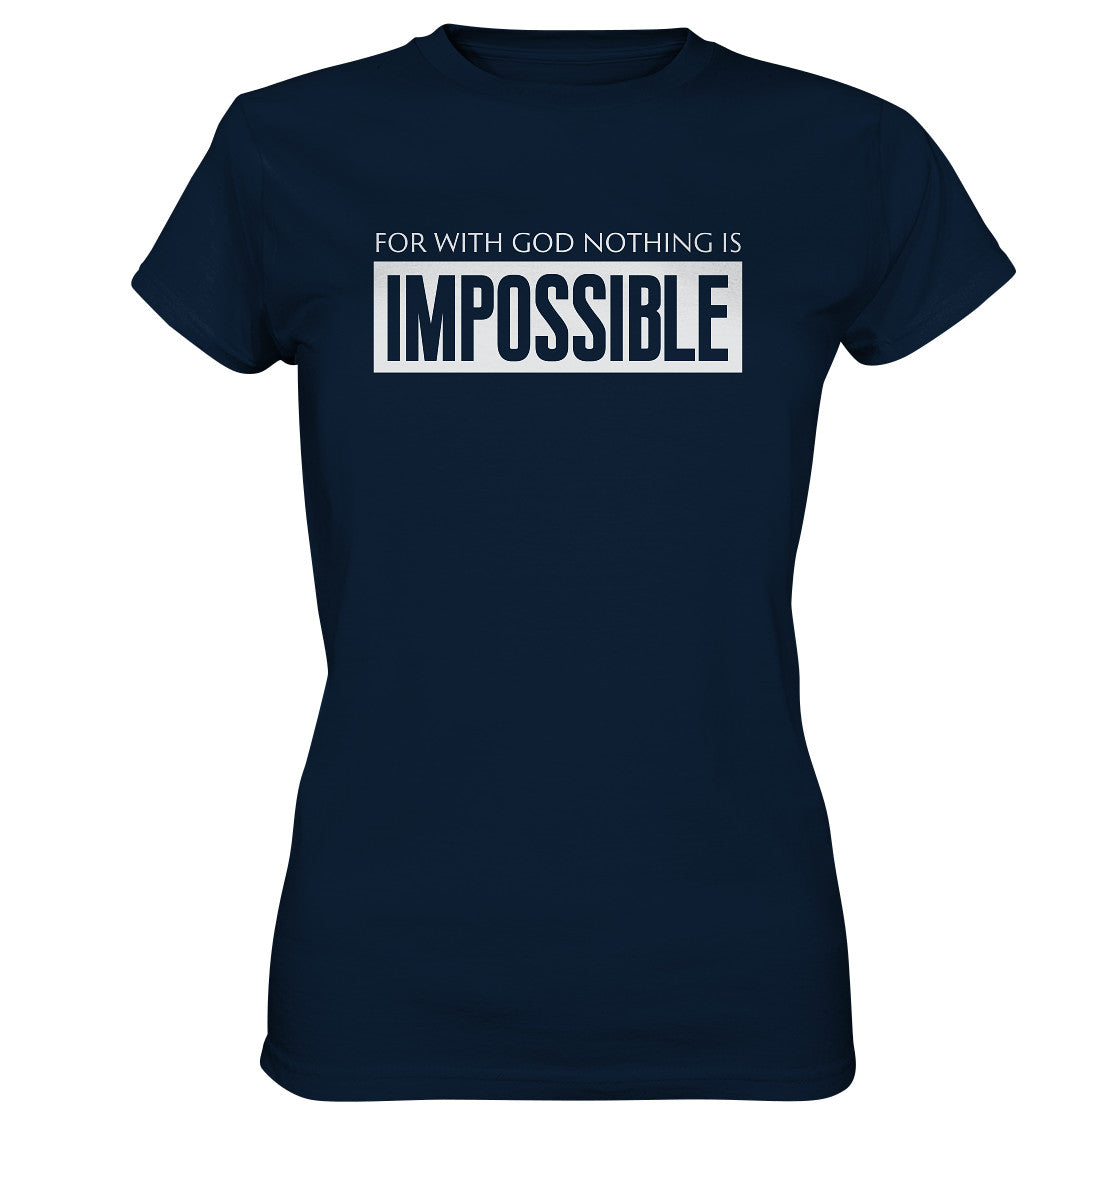 Lk 1,37 - IMPOSSIBLE - Ladies Premium Shirt